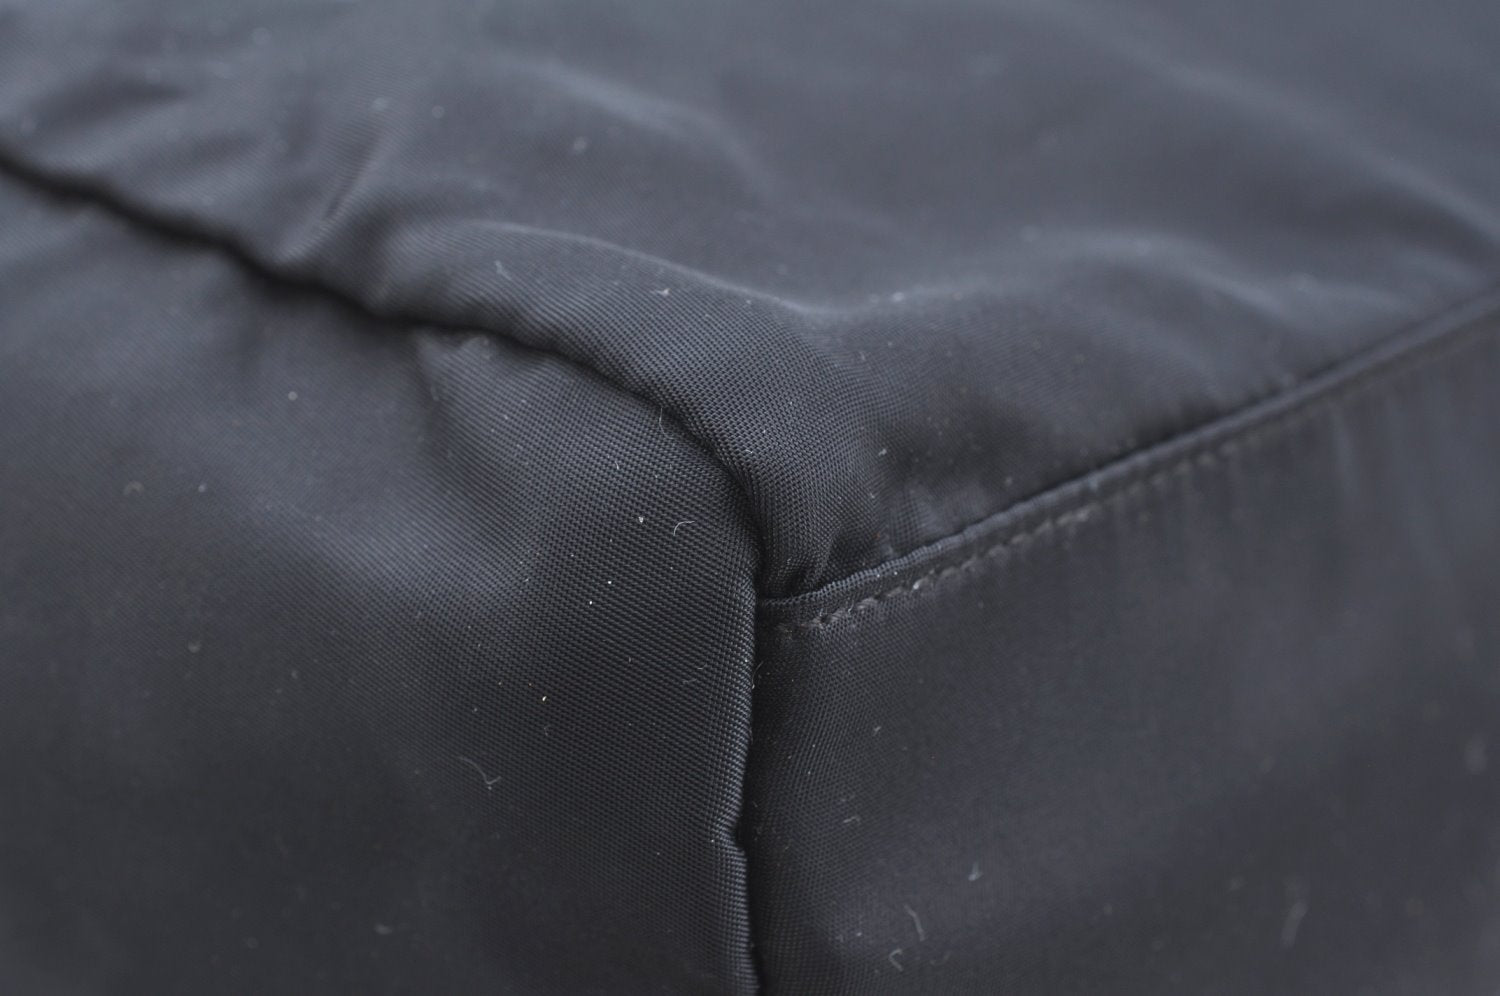 Authentic PRADA Vintage Nylon Tessuto Leather Hand Boston Bag Black 7592G